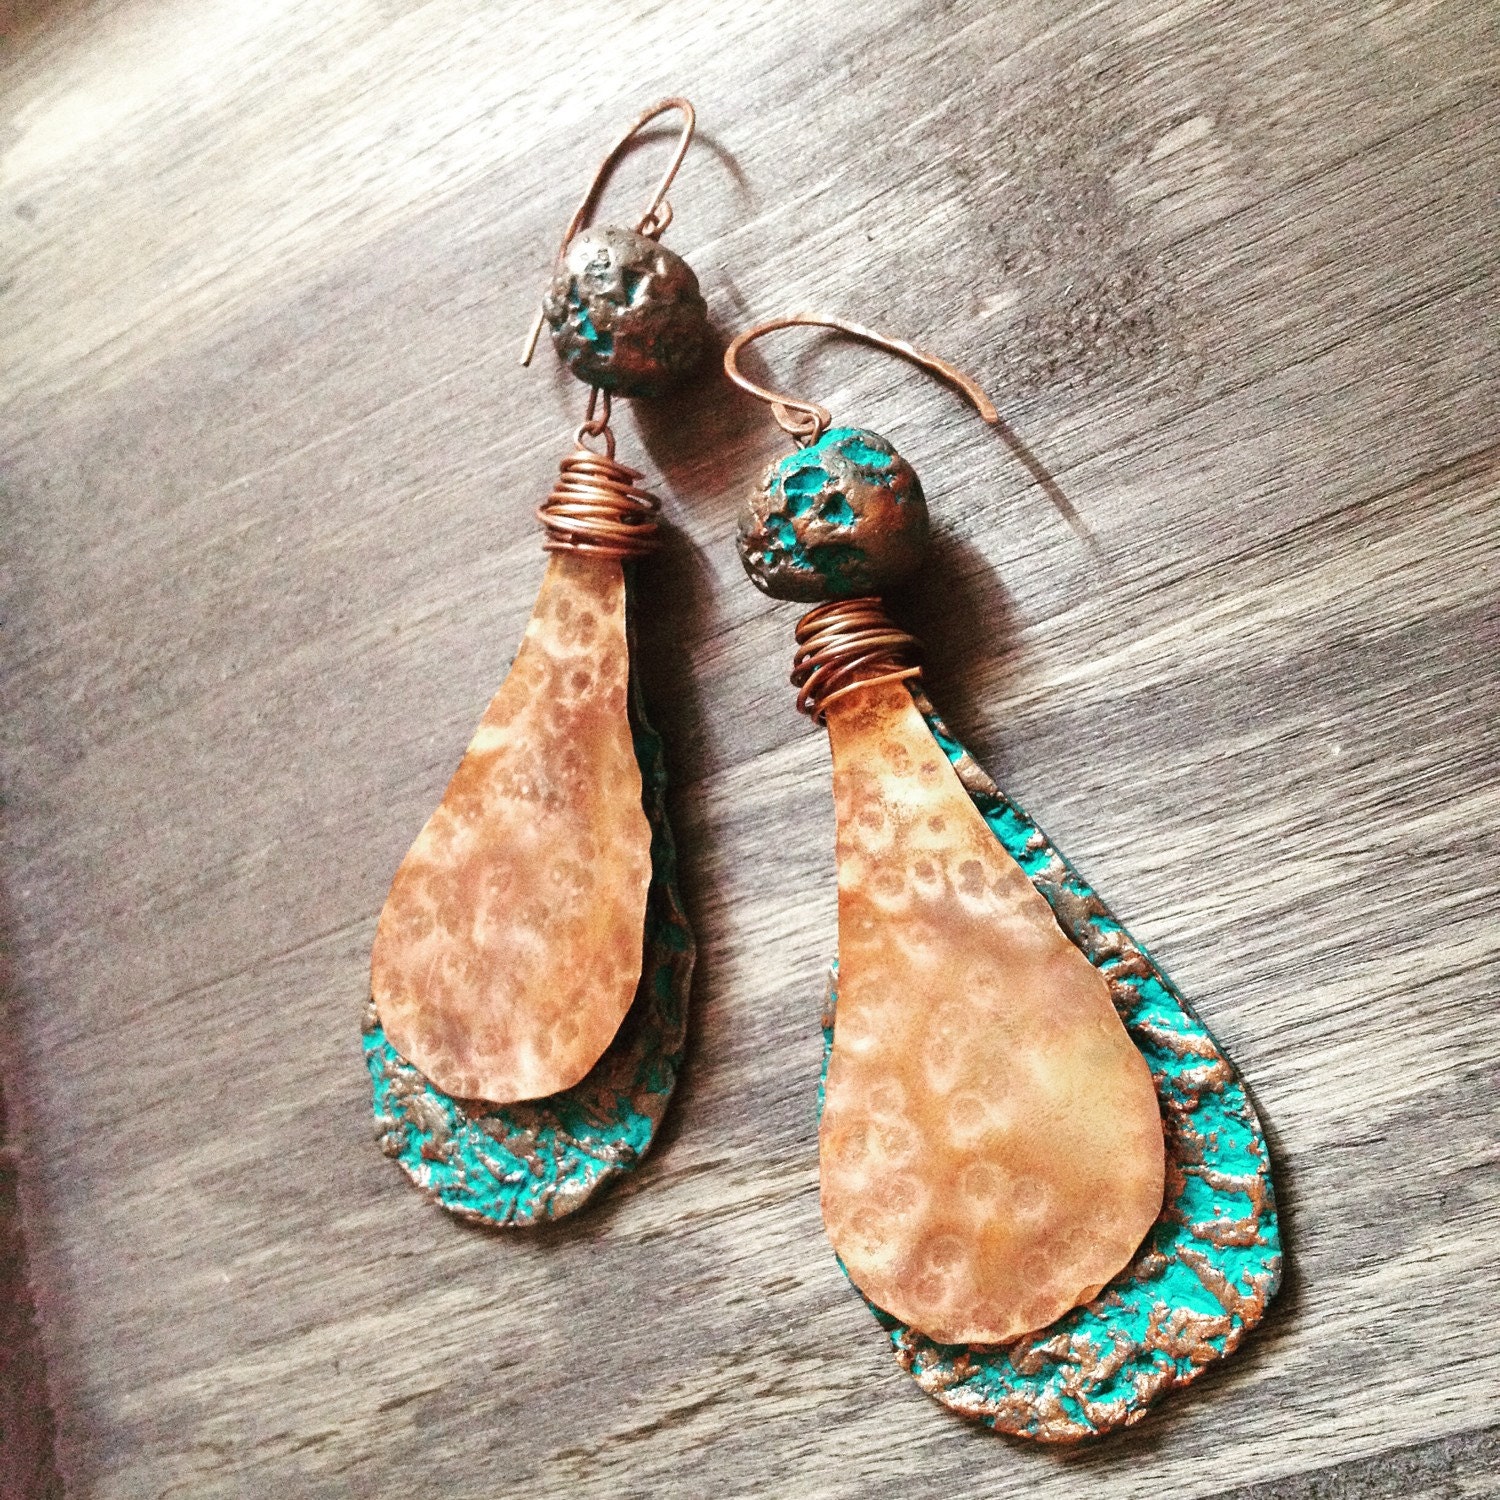 Rustic earrings turquoise earrings dangle earrings copper